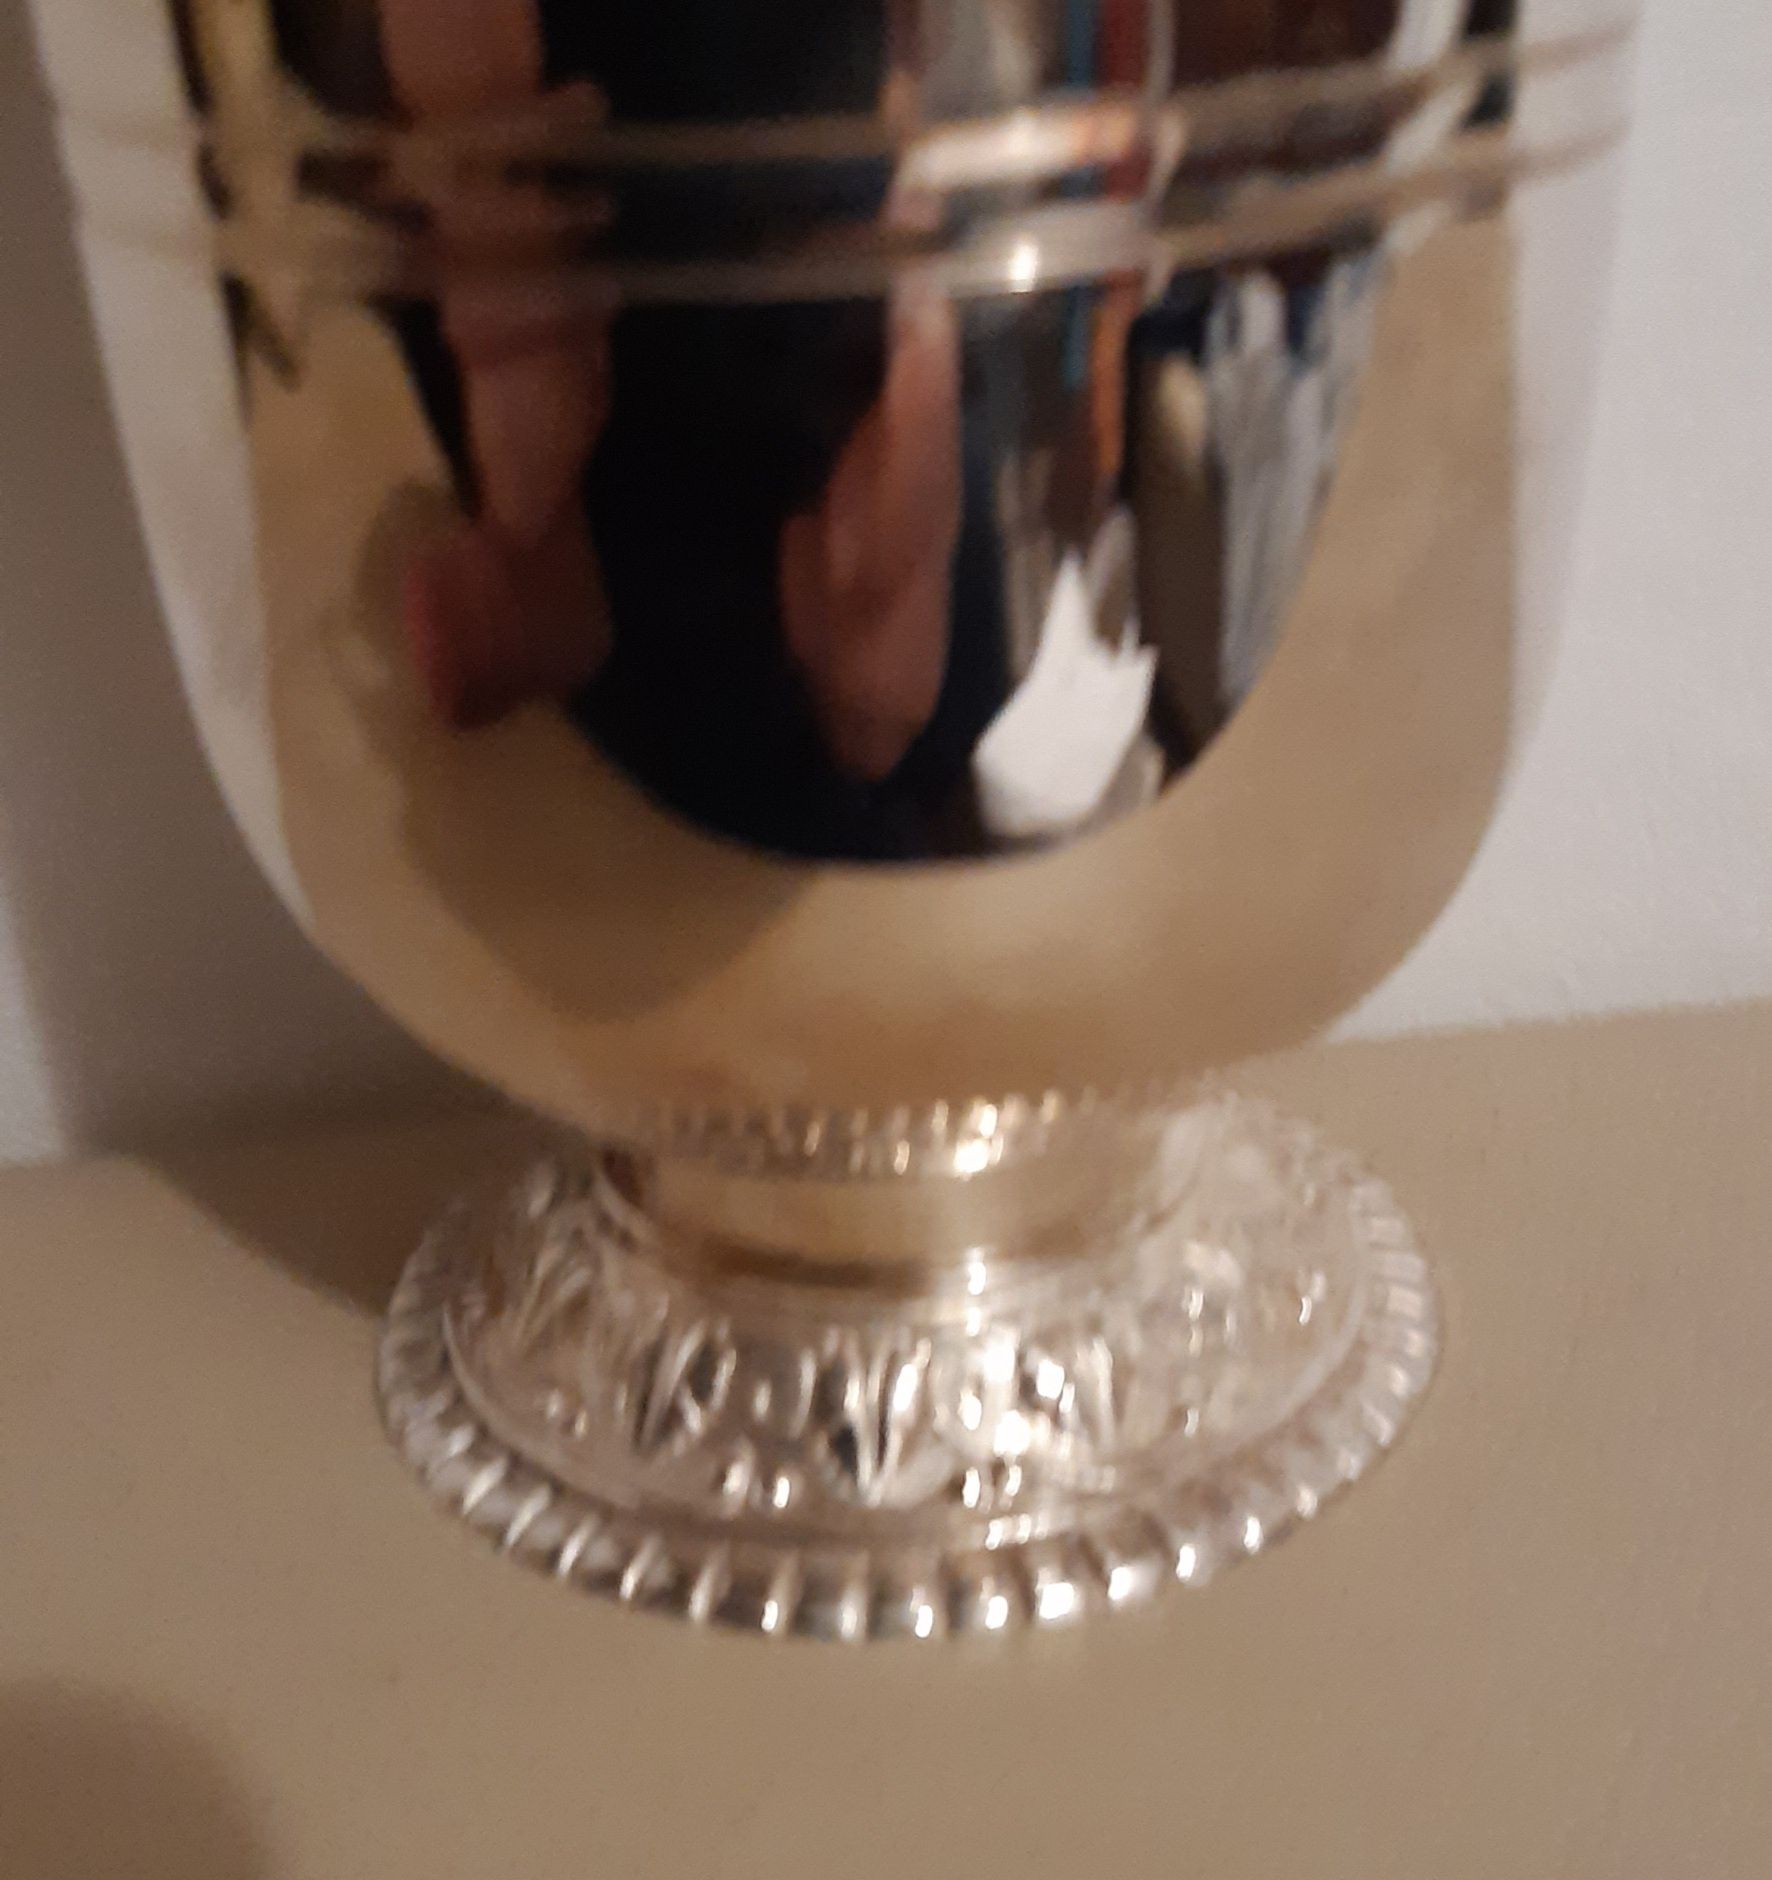 Cupa din anul 1994 .